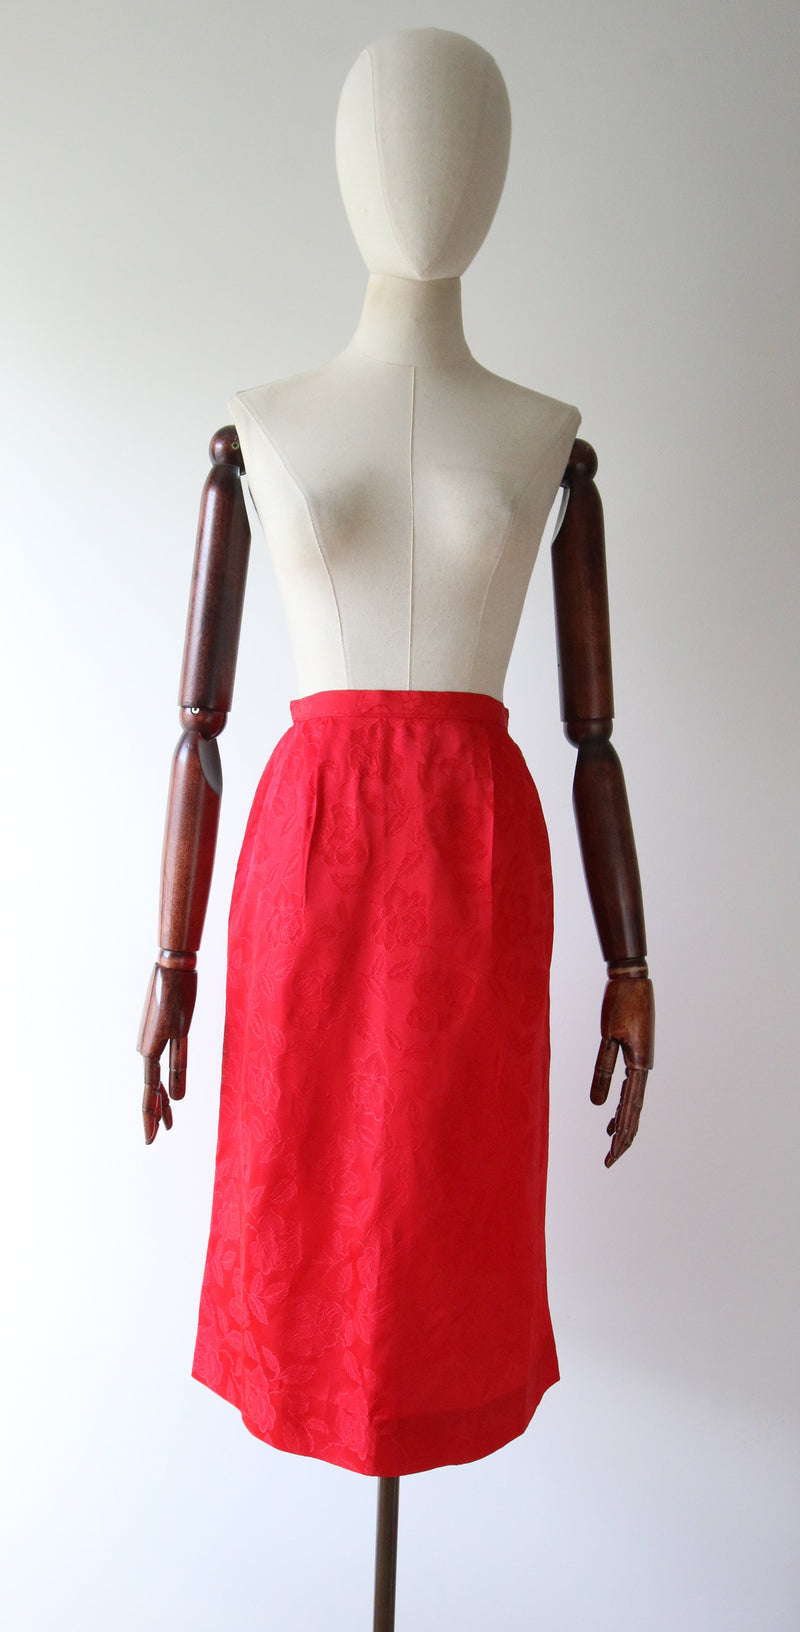 "Red Rose Brocade" Vintage 1960's Red Rose Brocade Skirt Suit UK 8-10 US 4-6